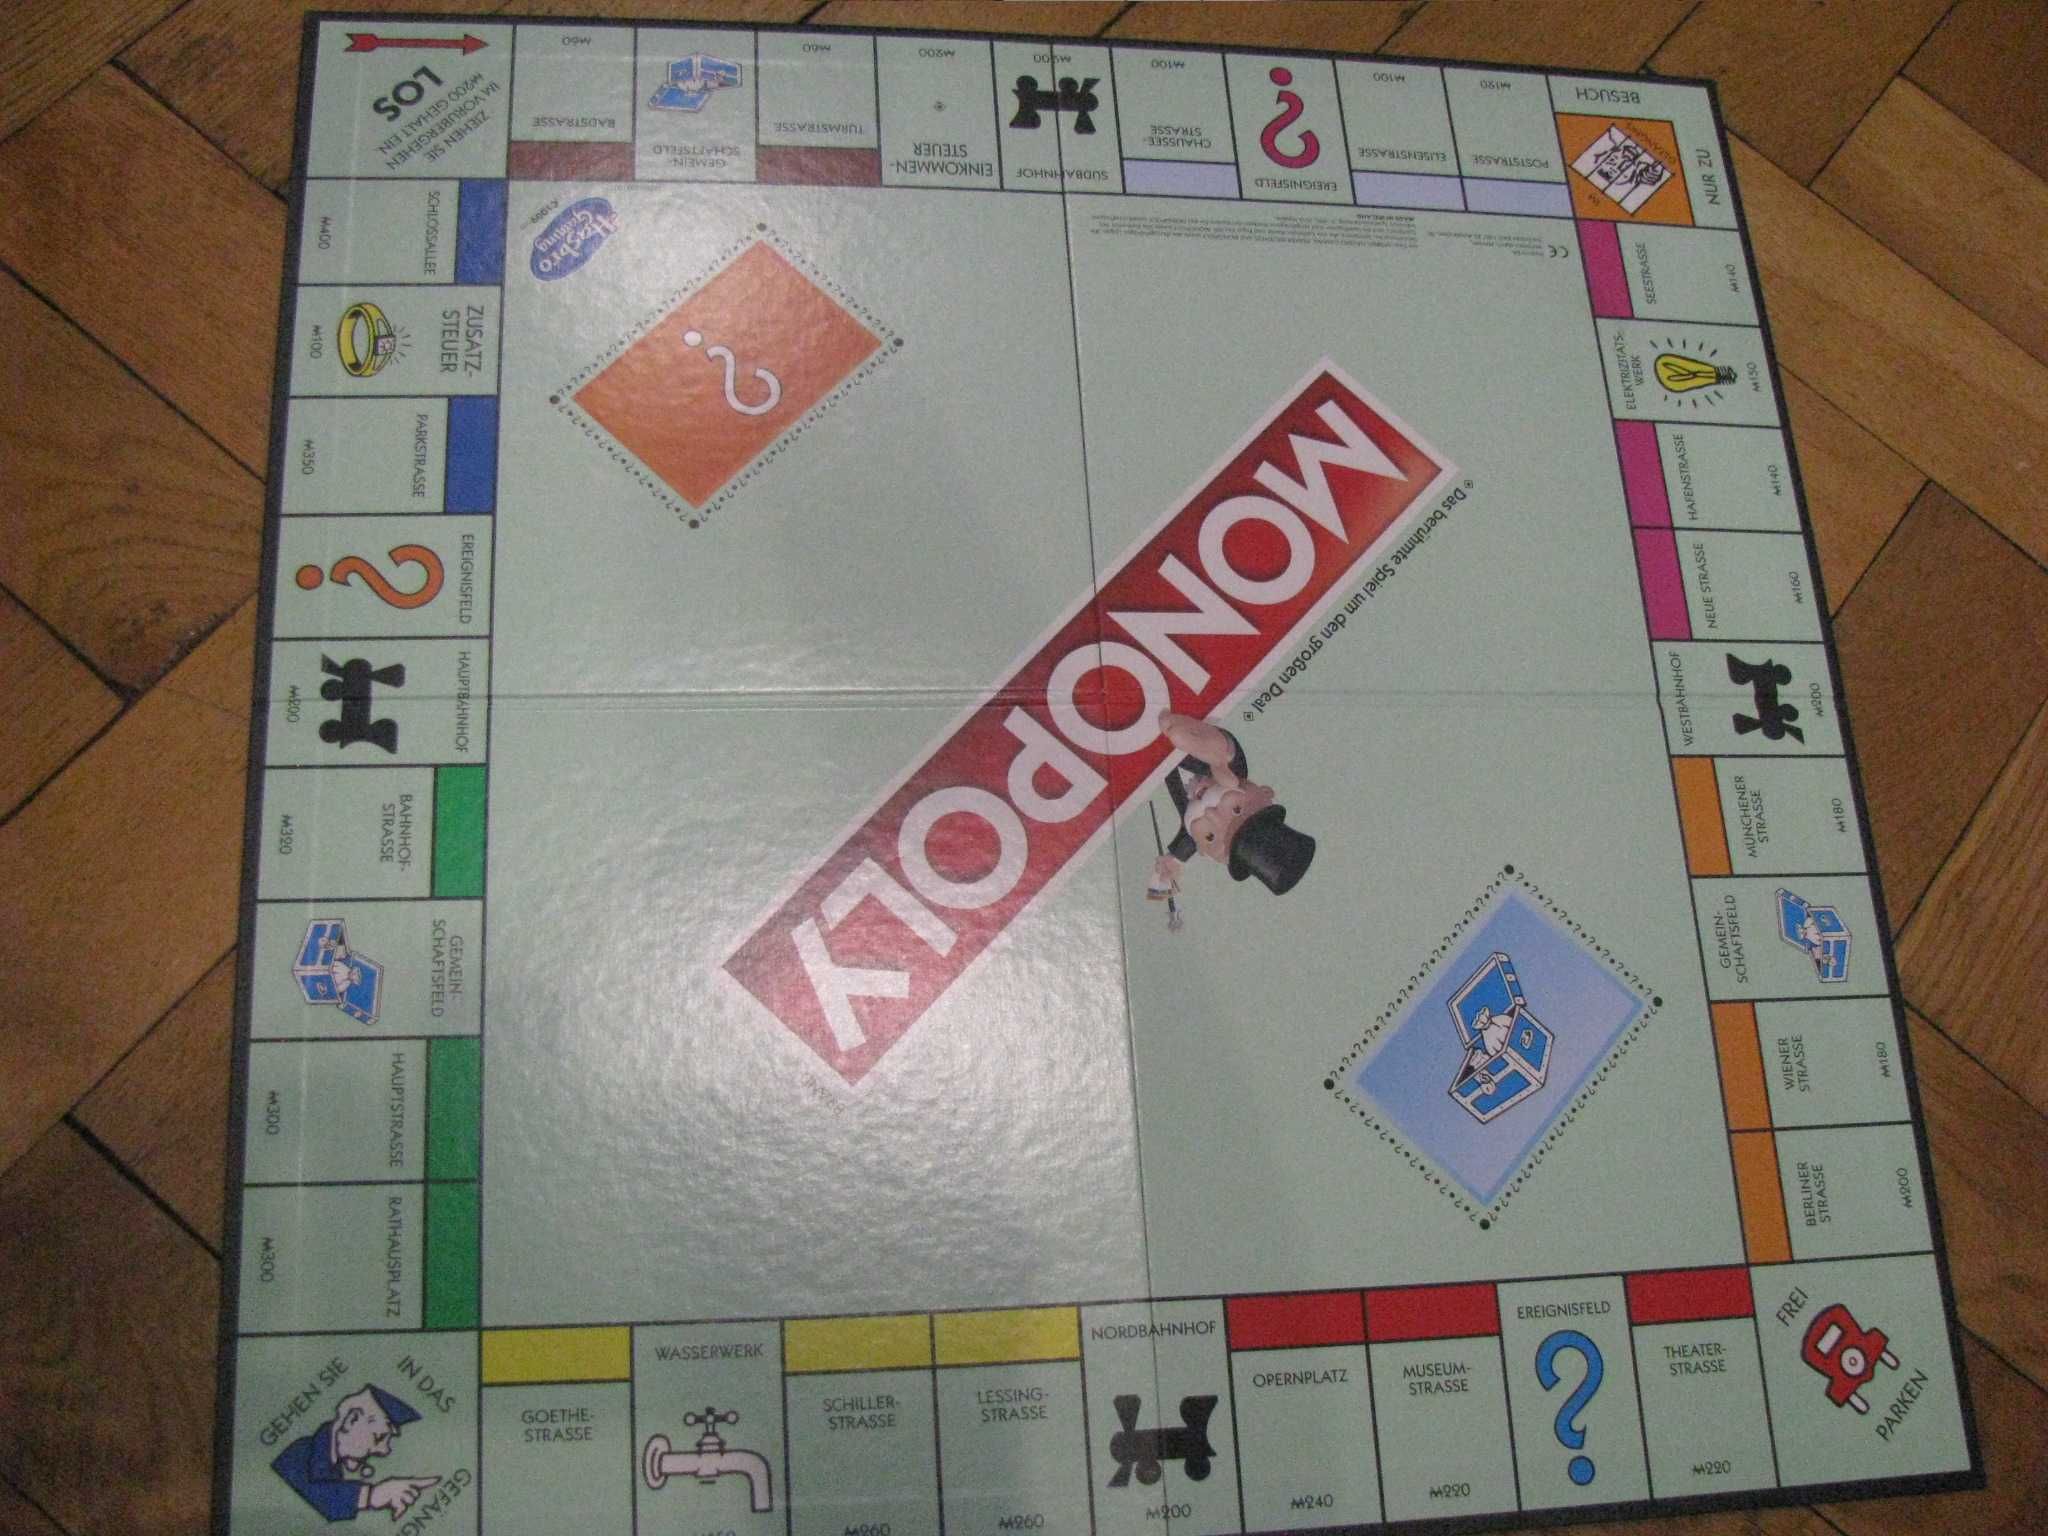 Nowa gra monopoly w wersji niemieckiej